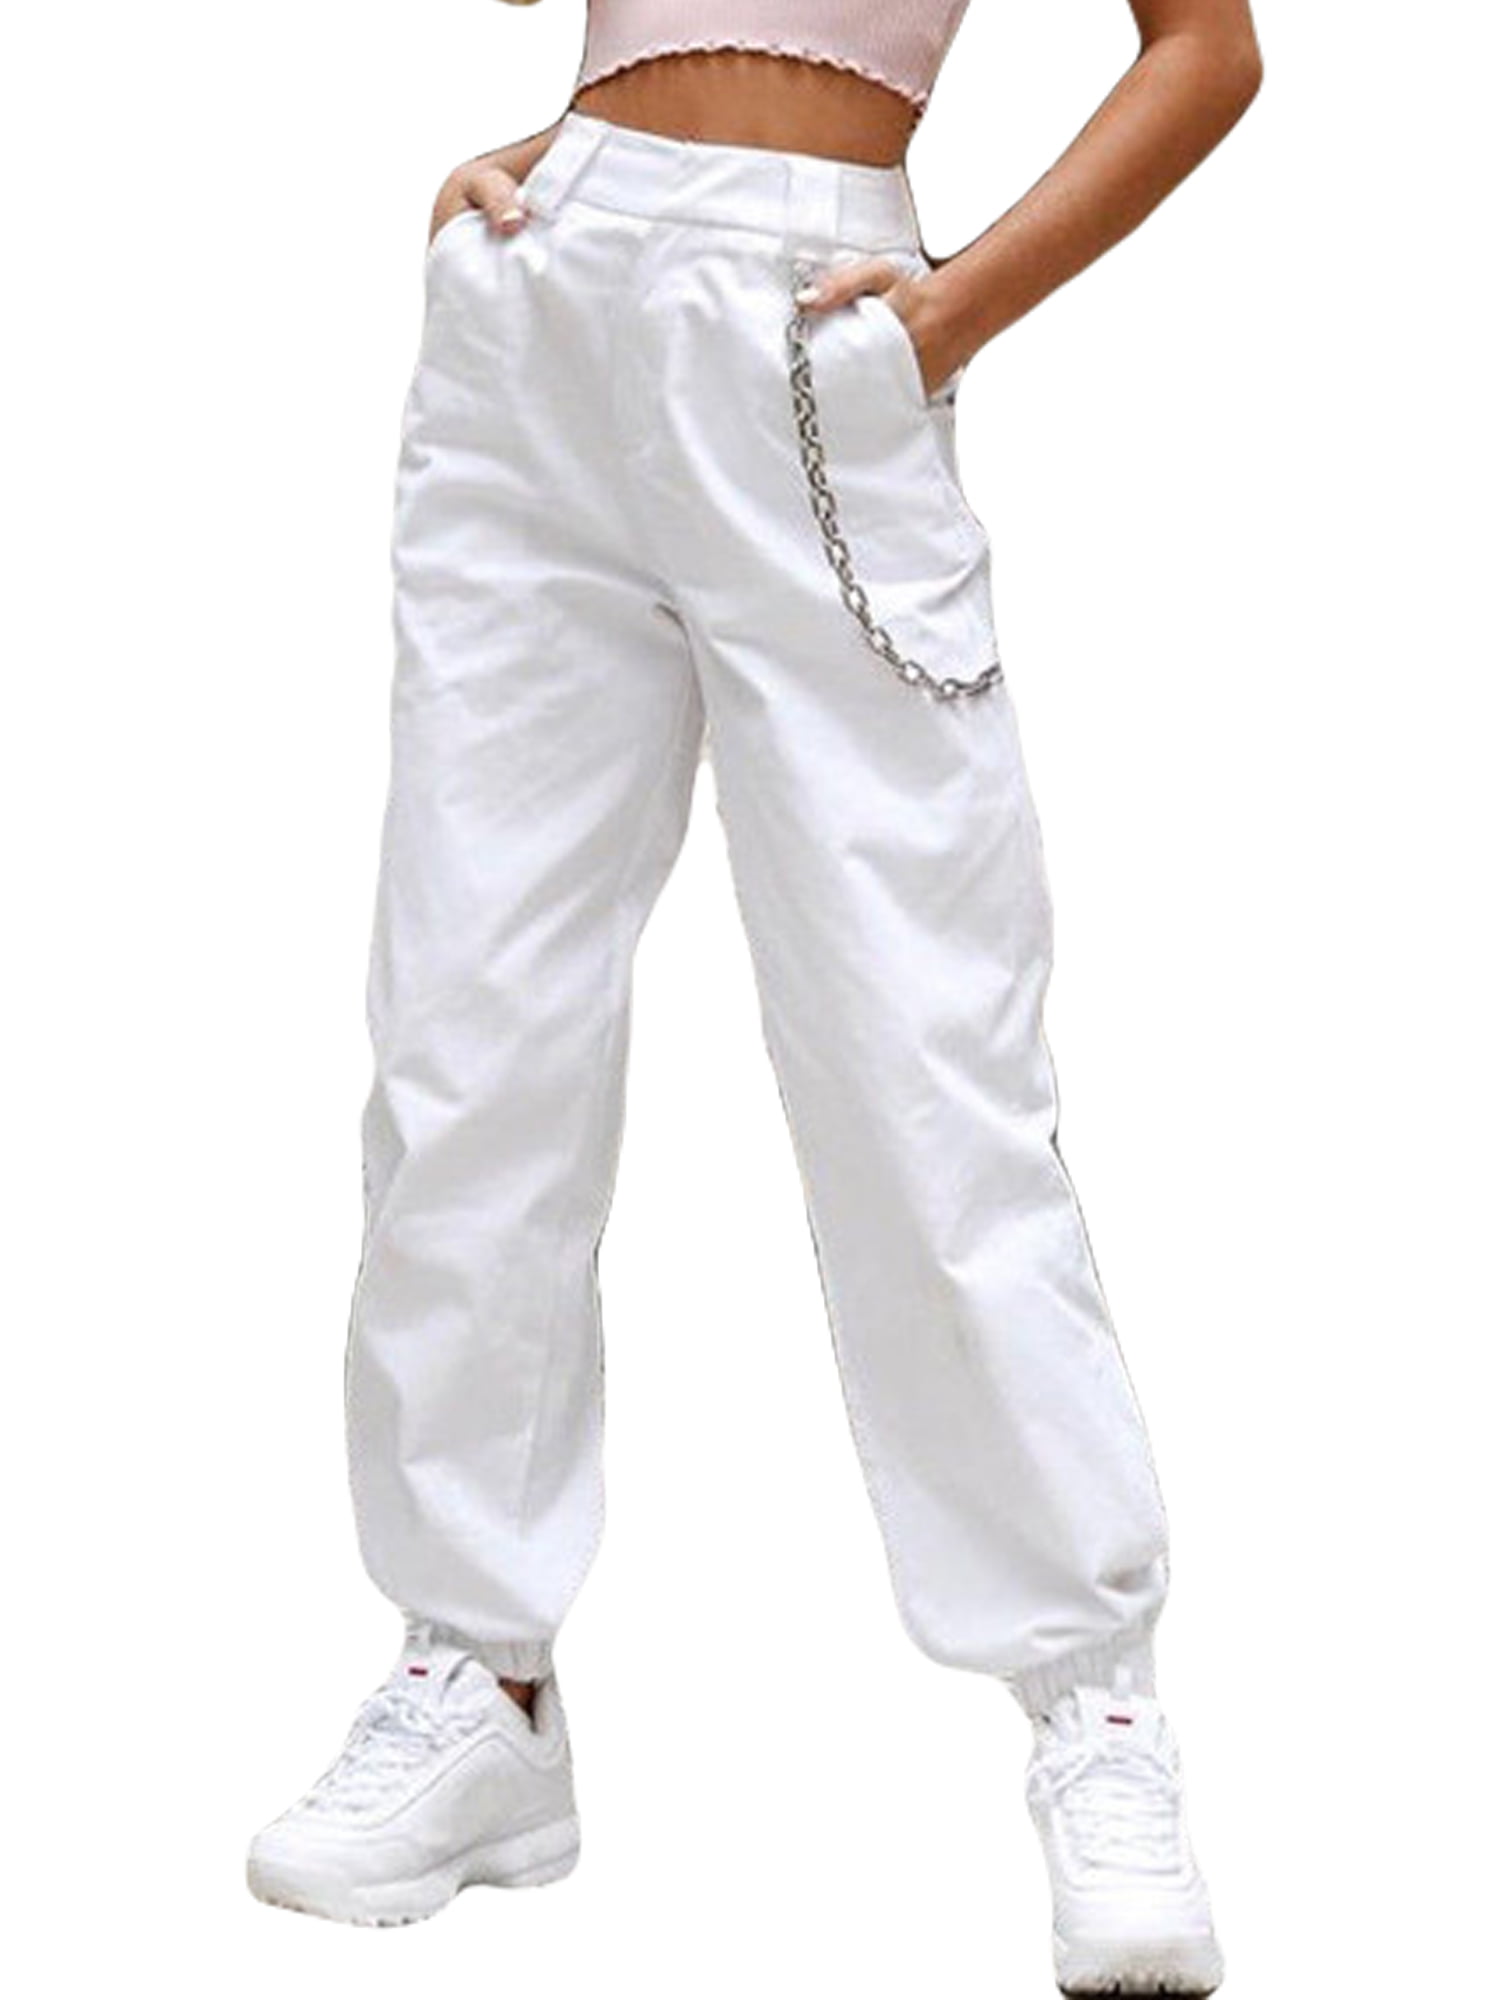 Dewadbow - Women Hip Hop Pants High Waist Cargo Baggy Harem Trousers ...